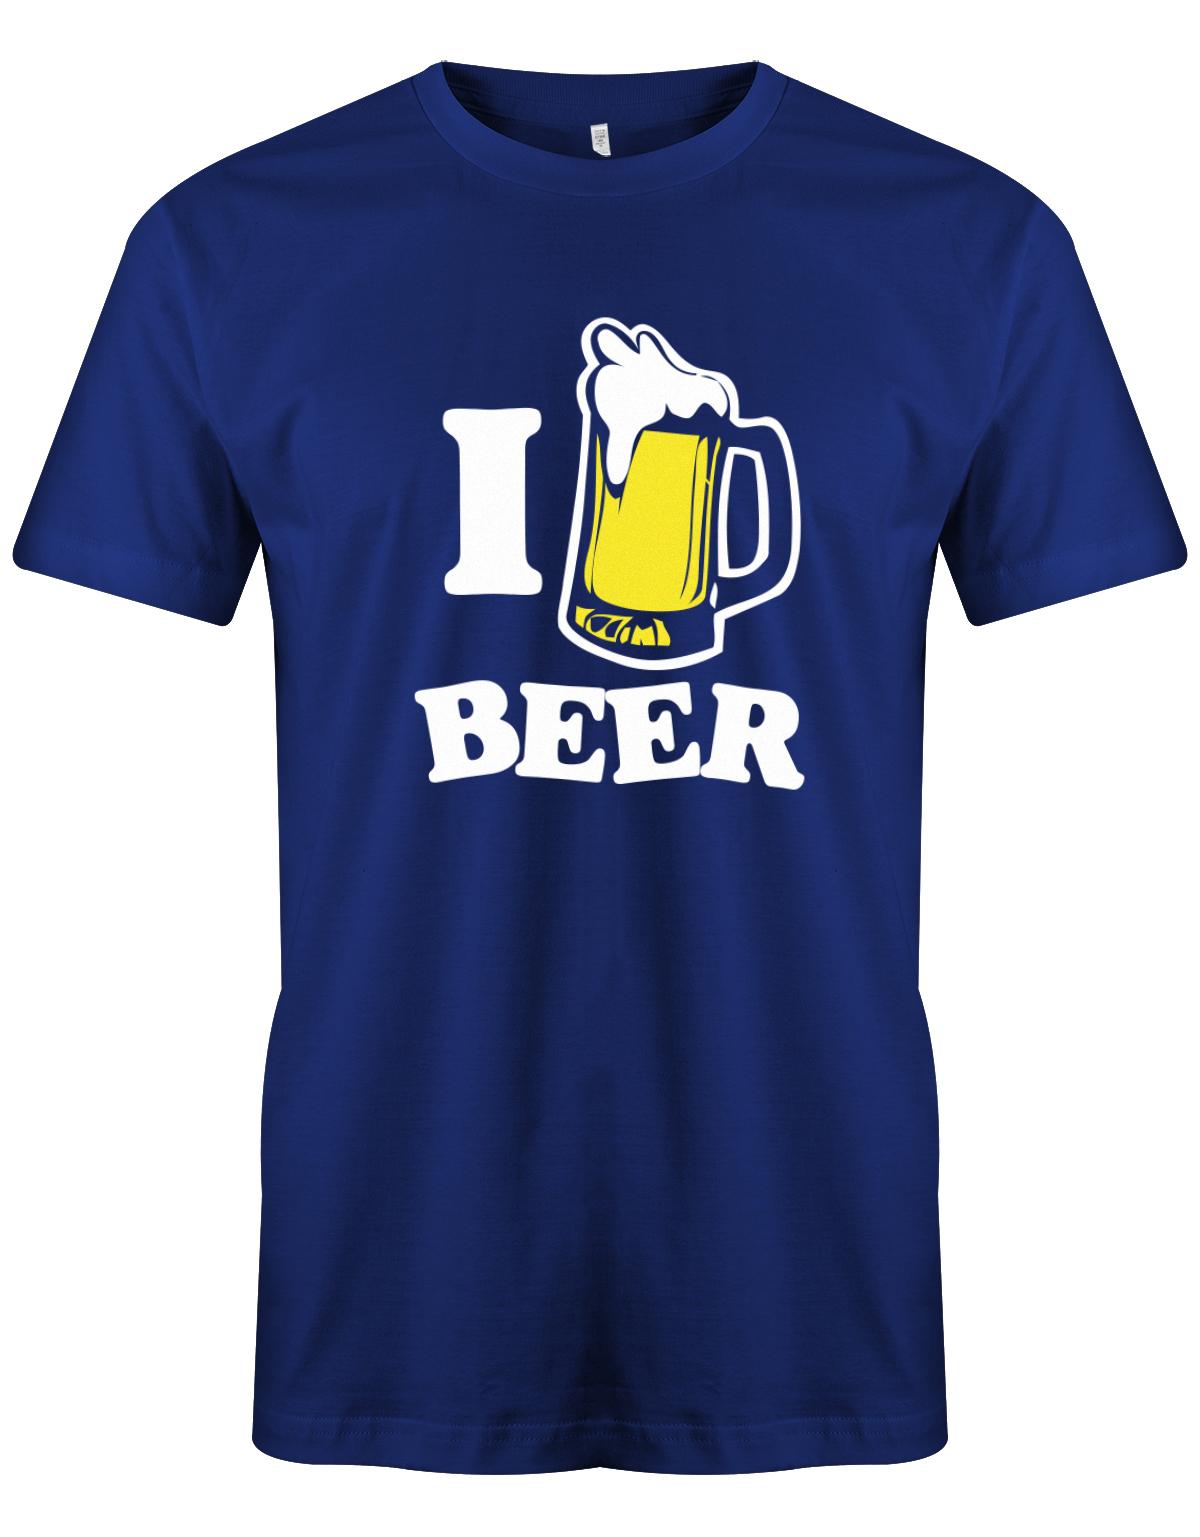 I-love-Beer-herren-bier-Shirt-Royalblau